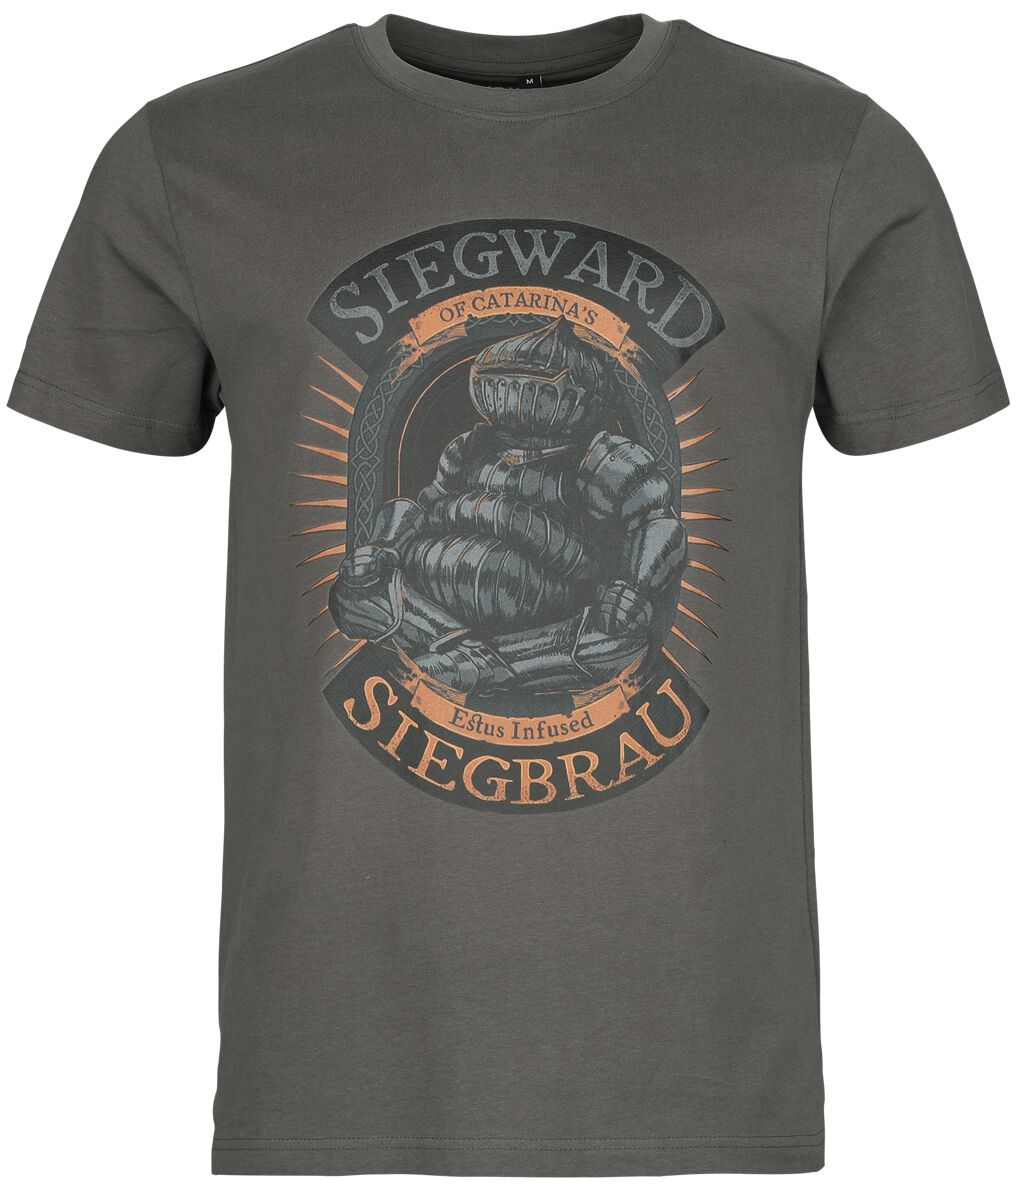 Dark Souls - Gaming T-Shirt - Siegward of Catarina - S bis M - für Männer - Größe M - grau  - EMP exklusives Merchandise!